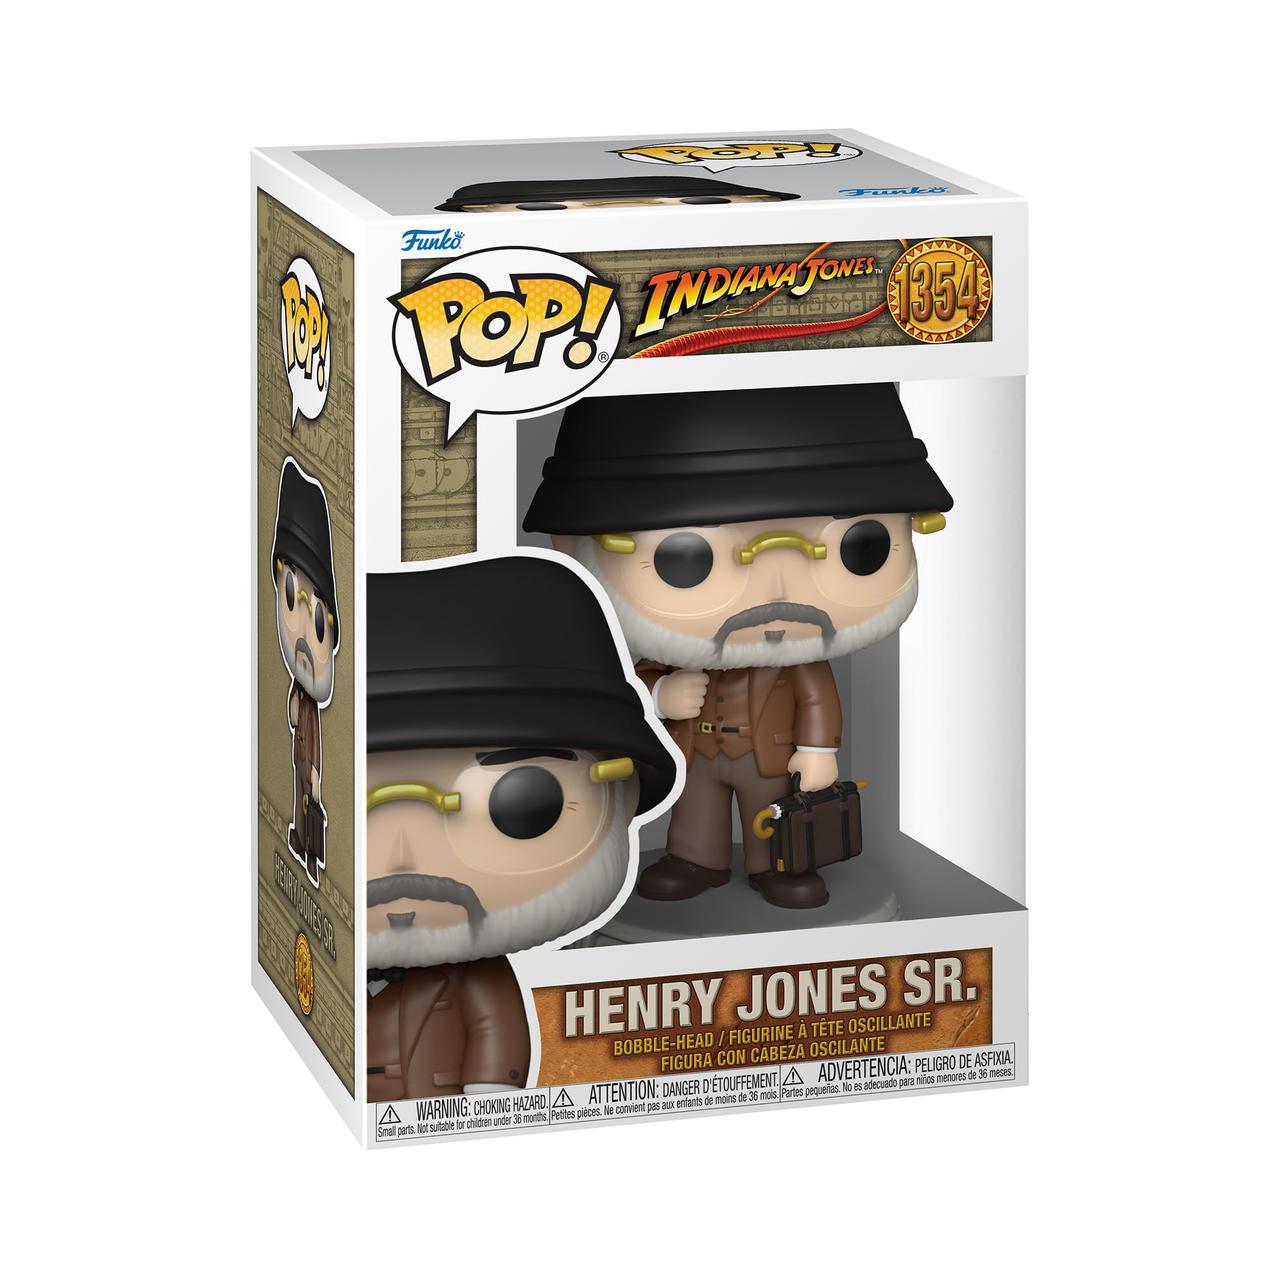 Фігурка Funko Pop Фанко Поп Indiana Jones Henry Jones Sr Індіана Джонс Генрі Джонс Старший 10 см FP A MQ 1324 - фото 3